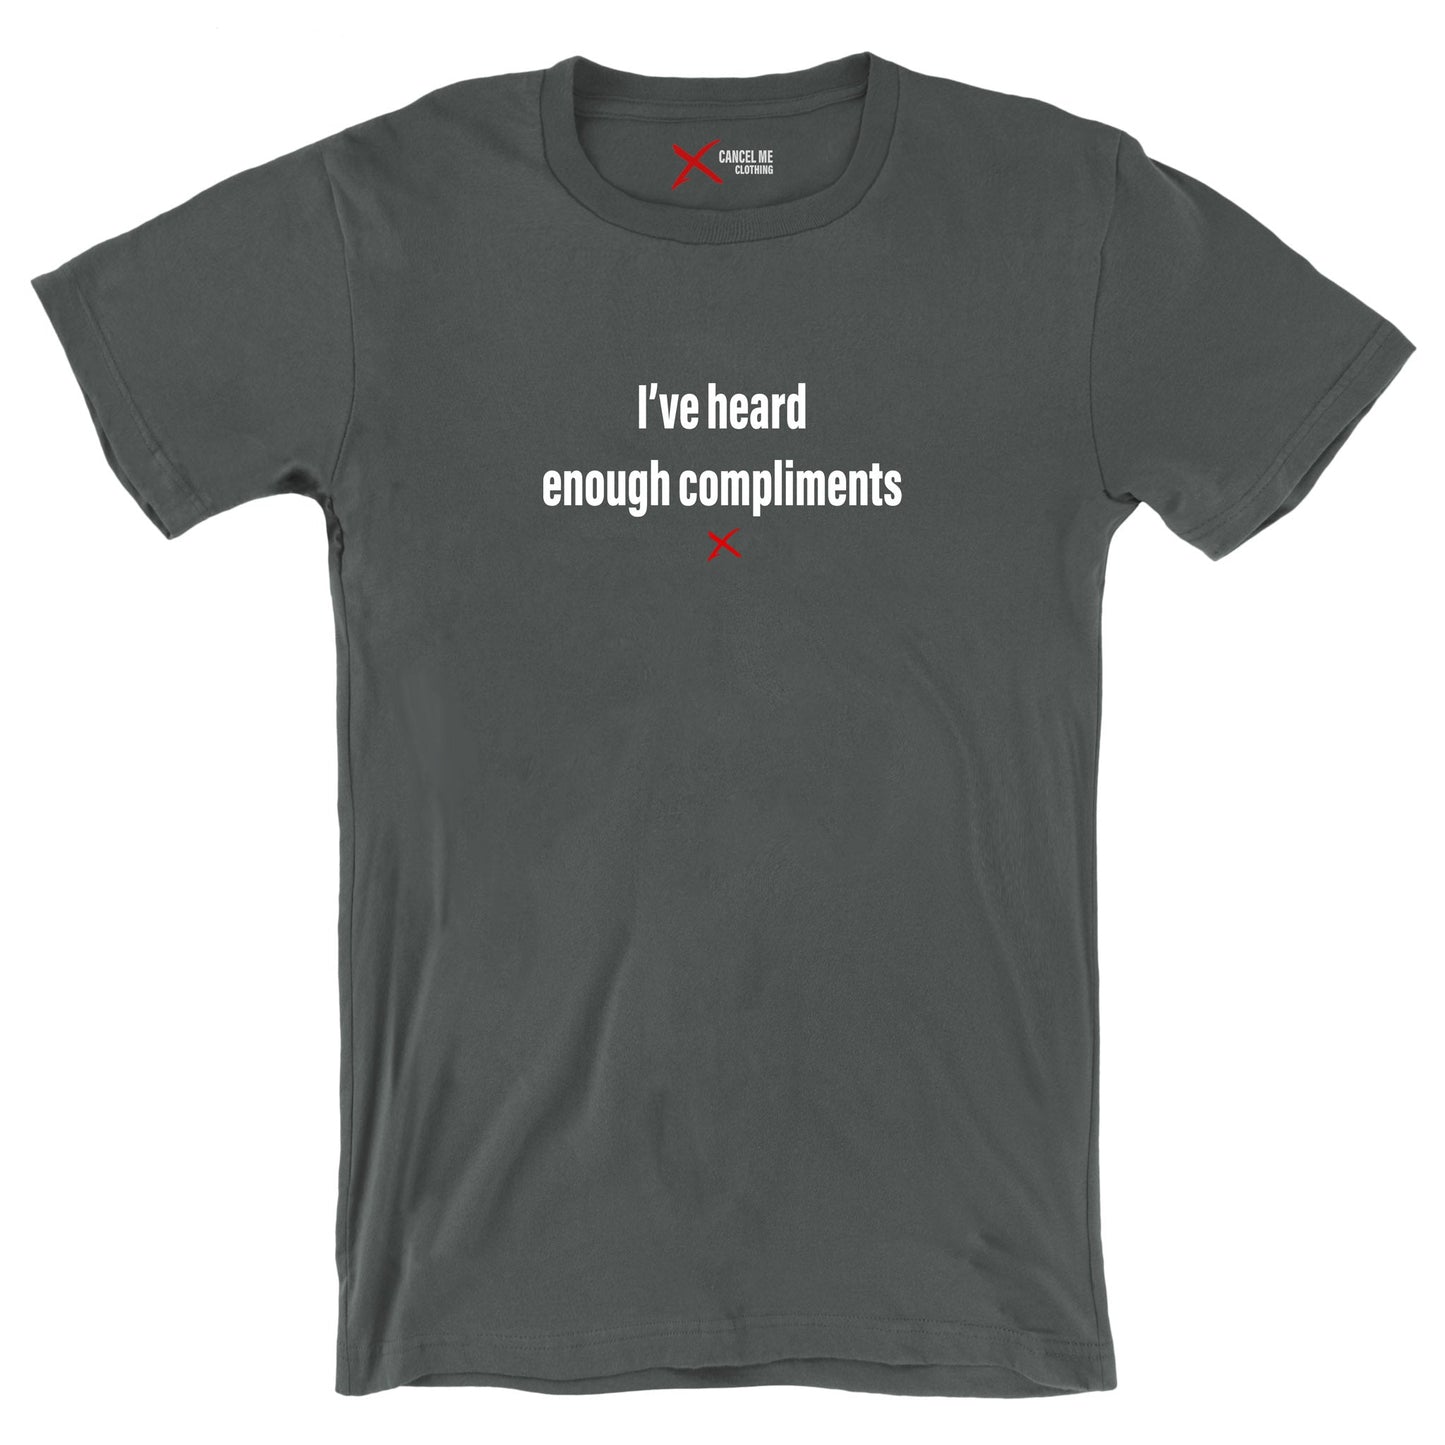 I've heard enough compliments - Shirt